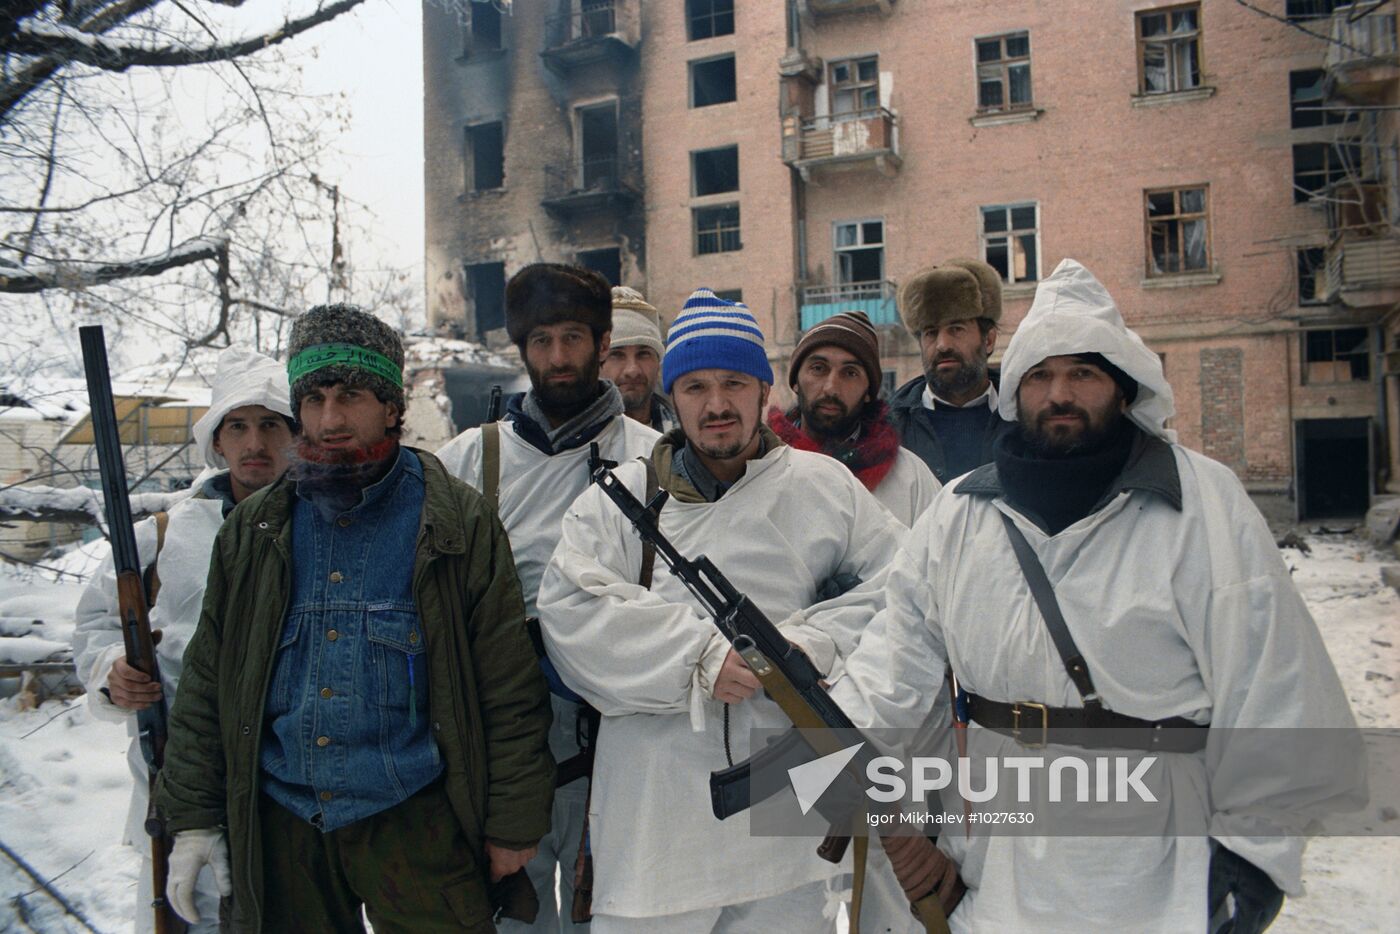 Chechen militants